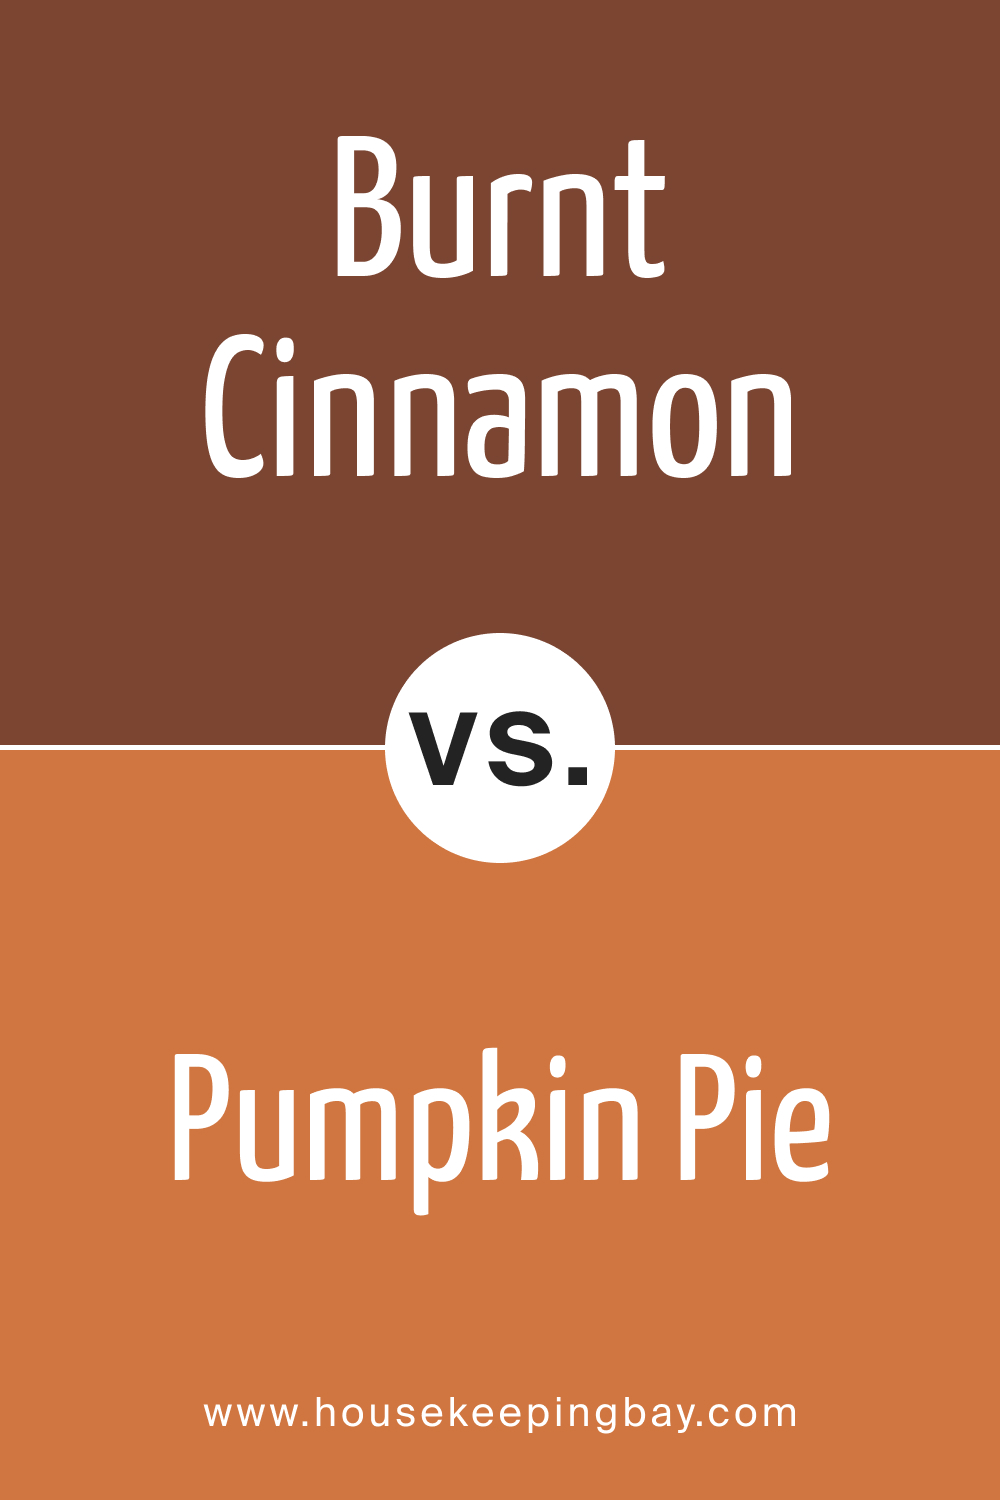 BM Burnt Cinnamon 2094-10 vs. BM 2167-20 Pumpkin Pie